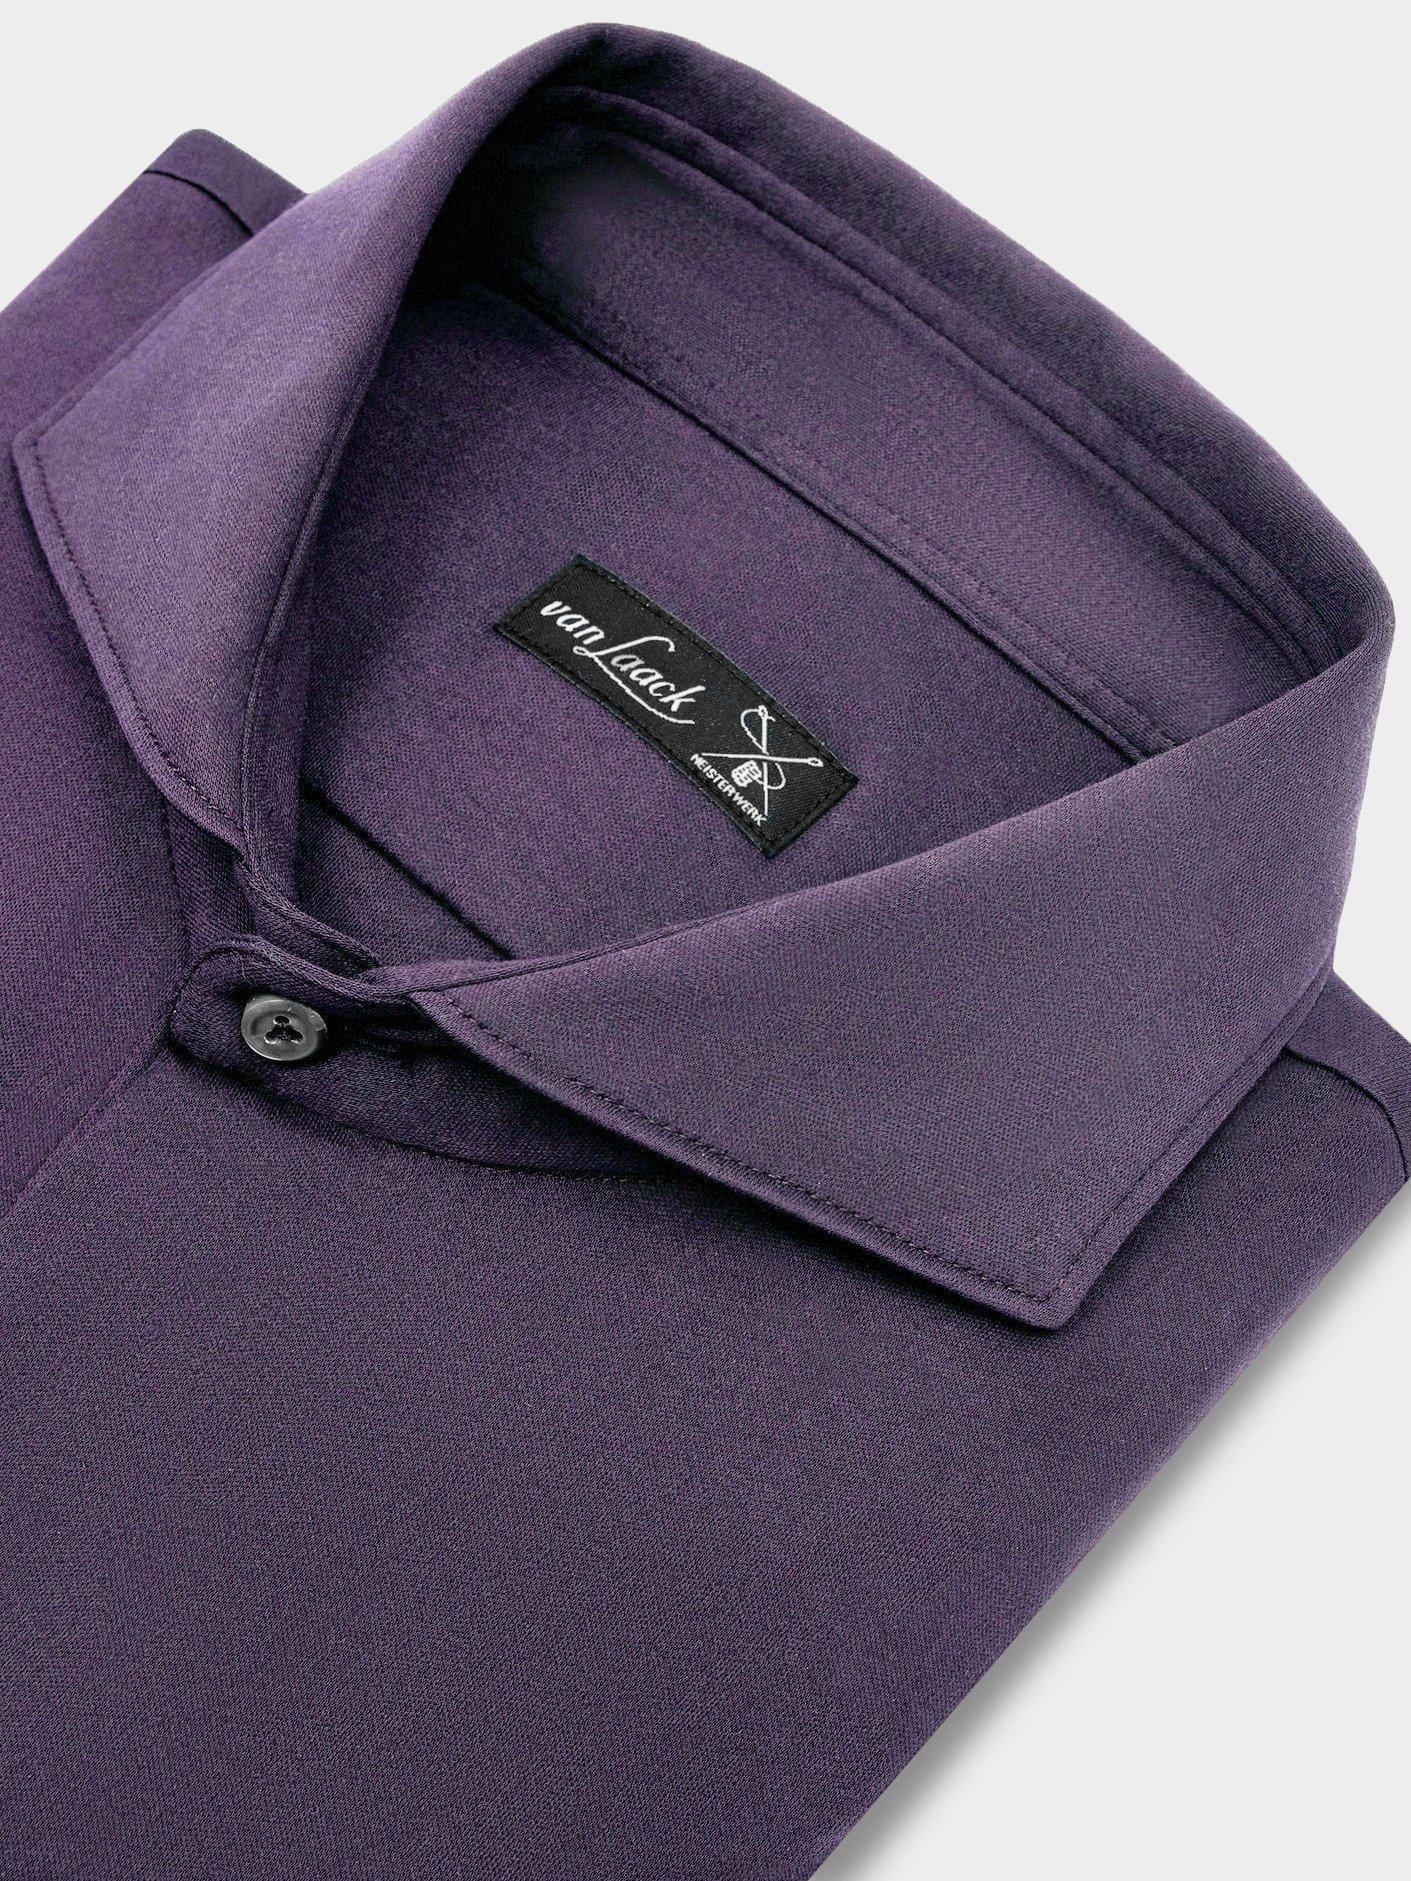 рубашка M PER L фиолетовый M-PER-L_180031_690 ,photo 2